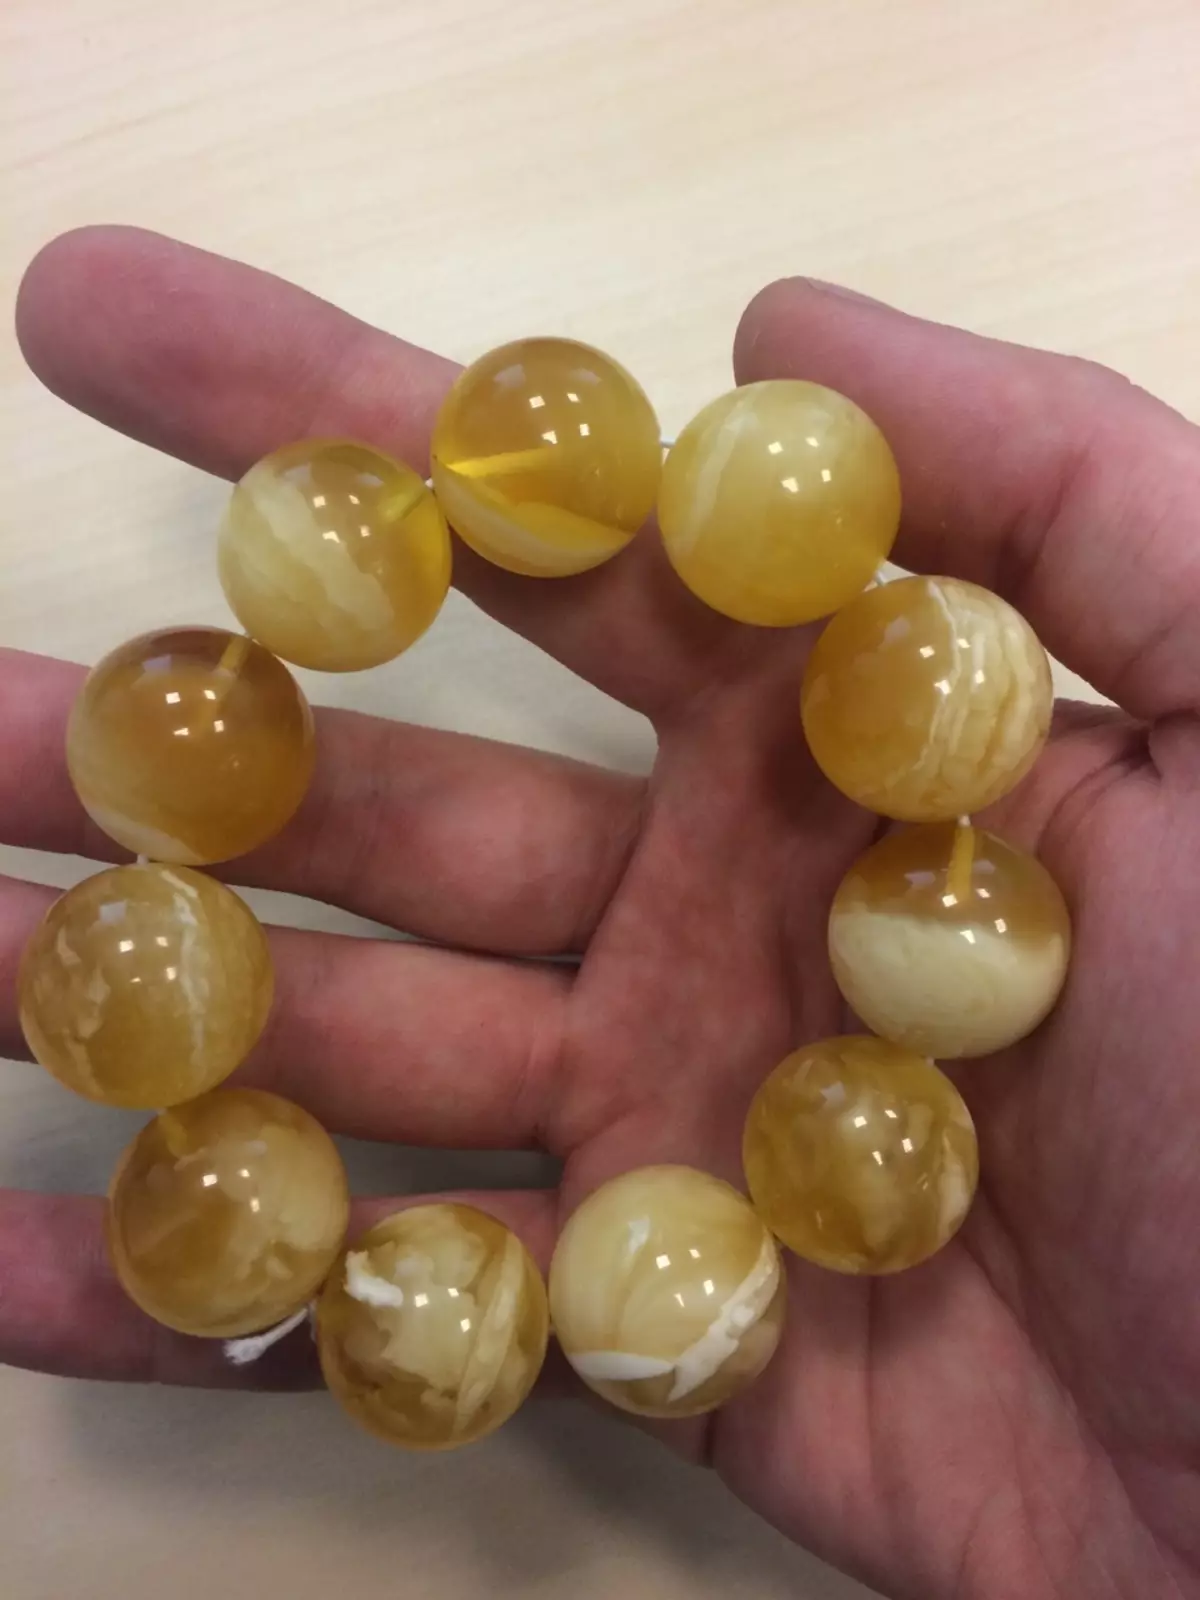 Amber eskumuturrekoa (51 argazki): Amber eskumuturreko propietateak, zer eskuz jantzita 3082_43